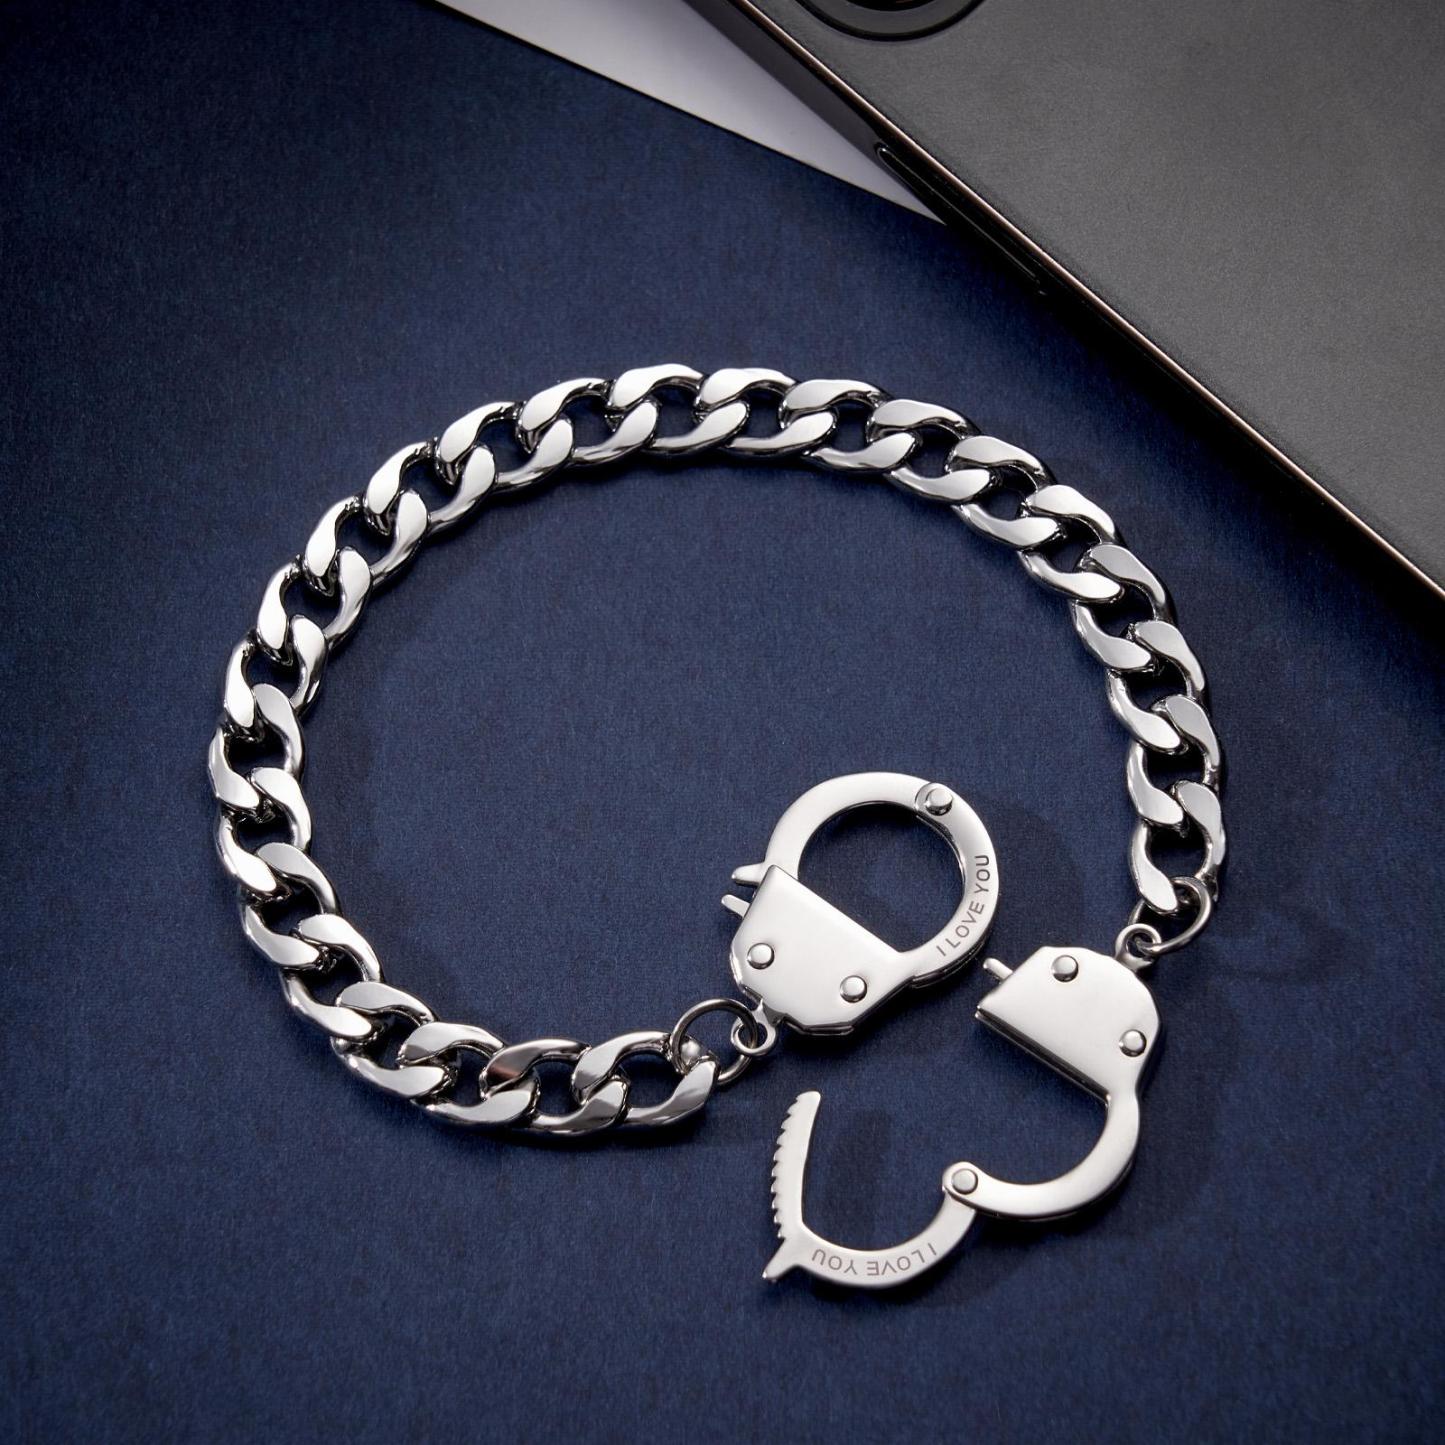 Handcuffs Engraved Bracelet Personalized Unique Shackle Chain Bracelet For Couples - soufeelau